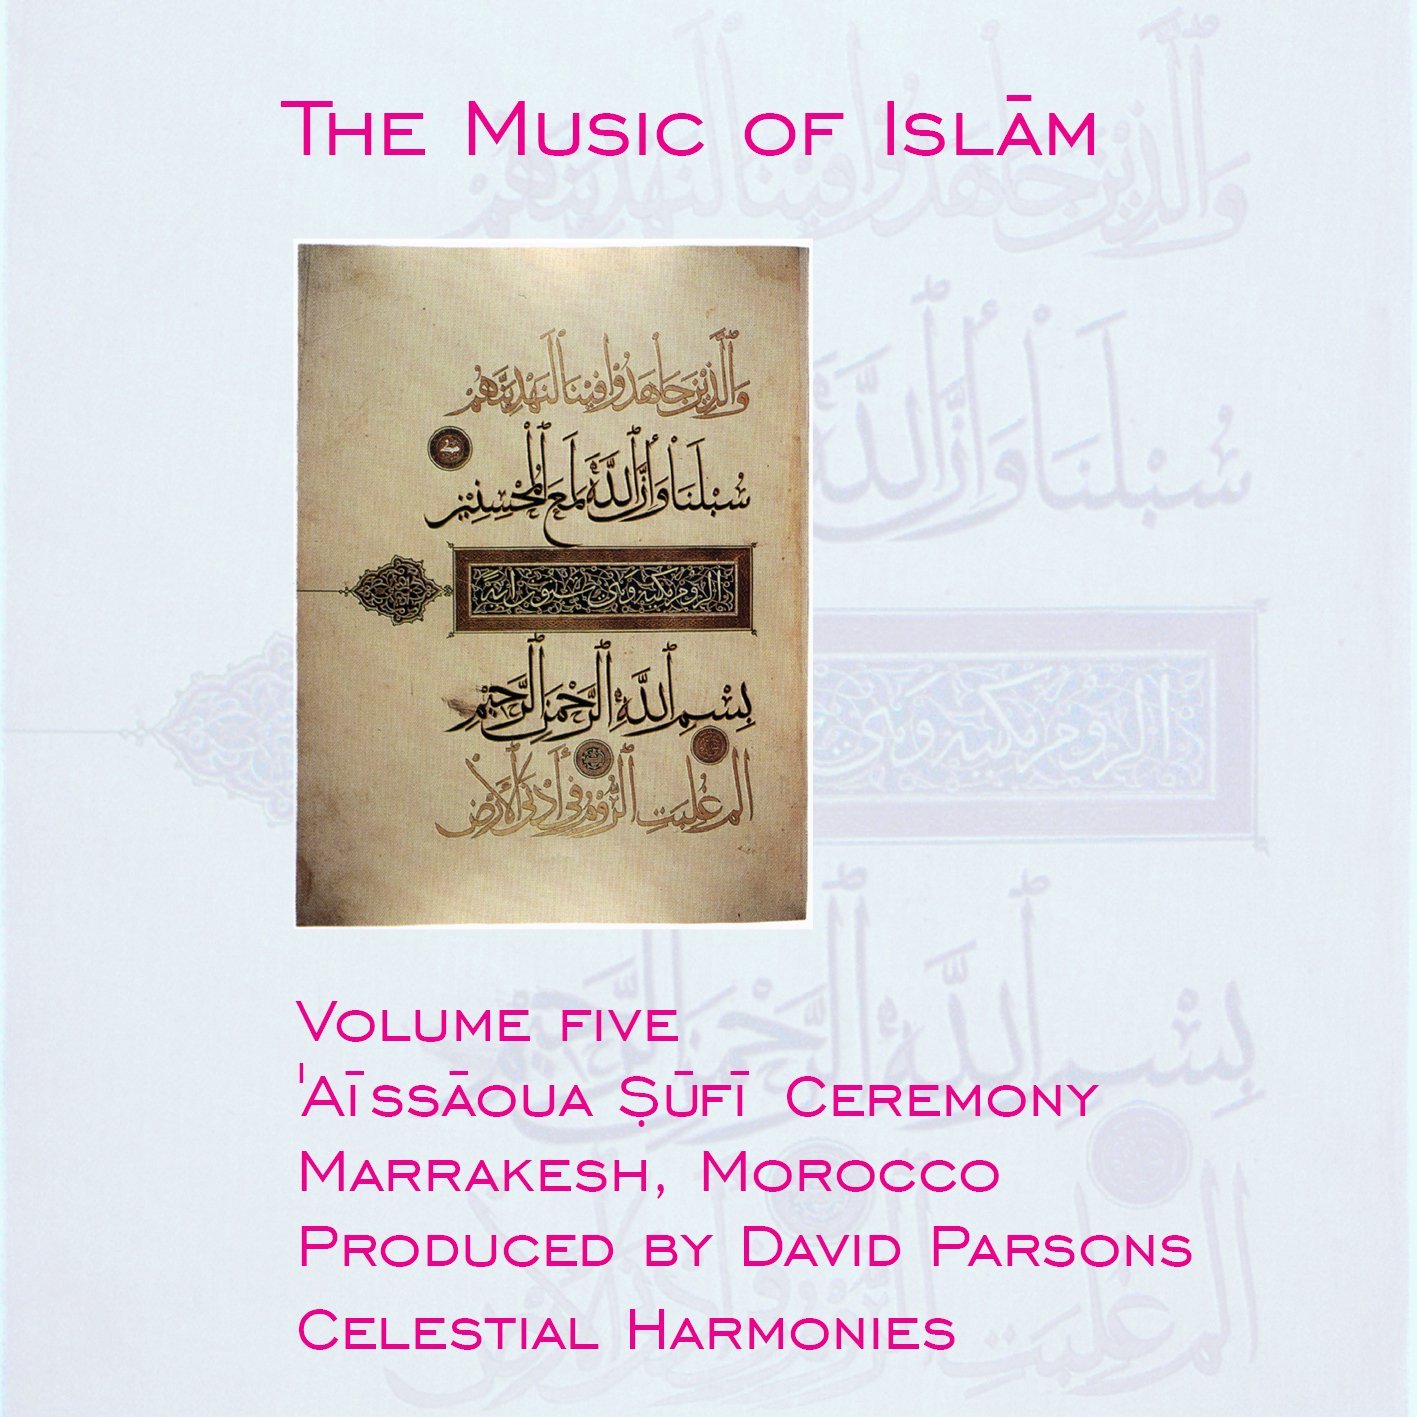 Audio Cd Music Of Islam (The): Vol. 05 - Morocco Aissaoua Sufi Ceremony, Marrakesh / Various (2 Cd) NUOVO SIGILLATO, EDIZIONE DEL 02/01/2001 SUBITO DISPONIBILE